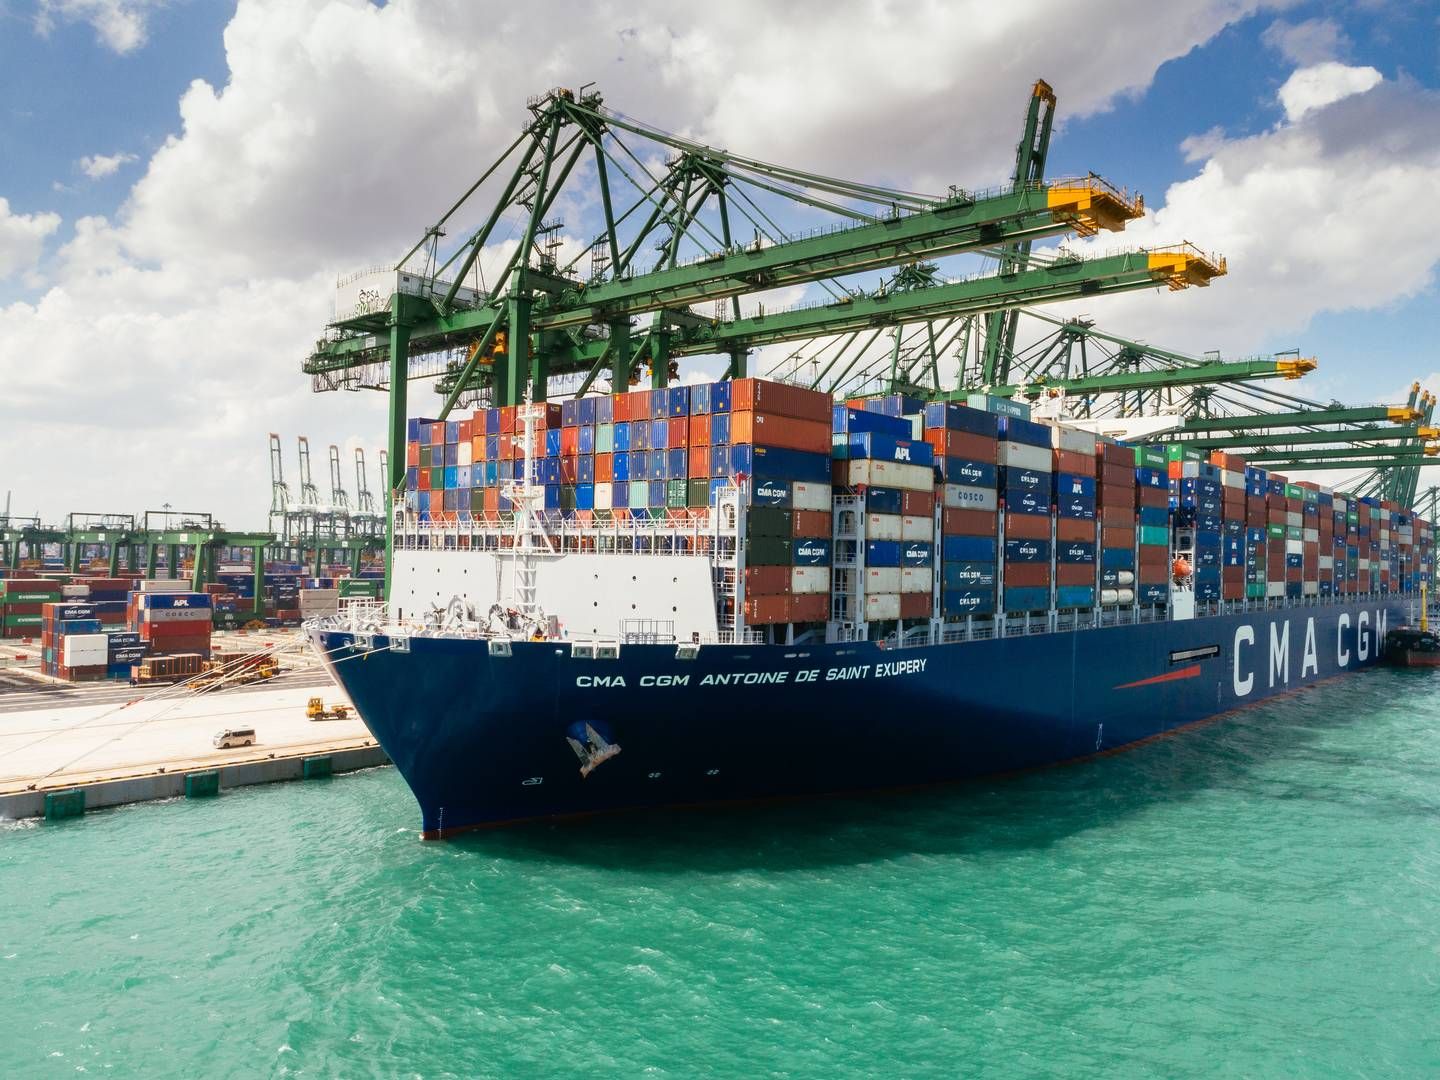 "Efter min mening kunne de to rederiers bæredygtighedspagt være kernen i et bredere repræsentativt organ for shippingindustrien," siger Philip Damas fra konsulenthuset Drewry. | Photo: Pr / Cma Cgm